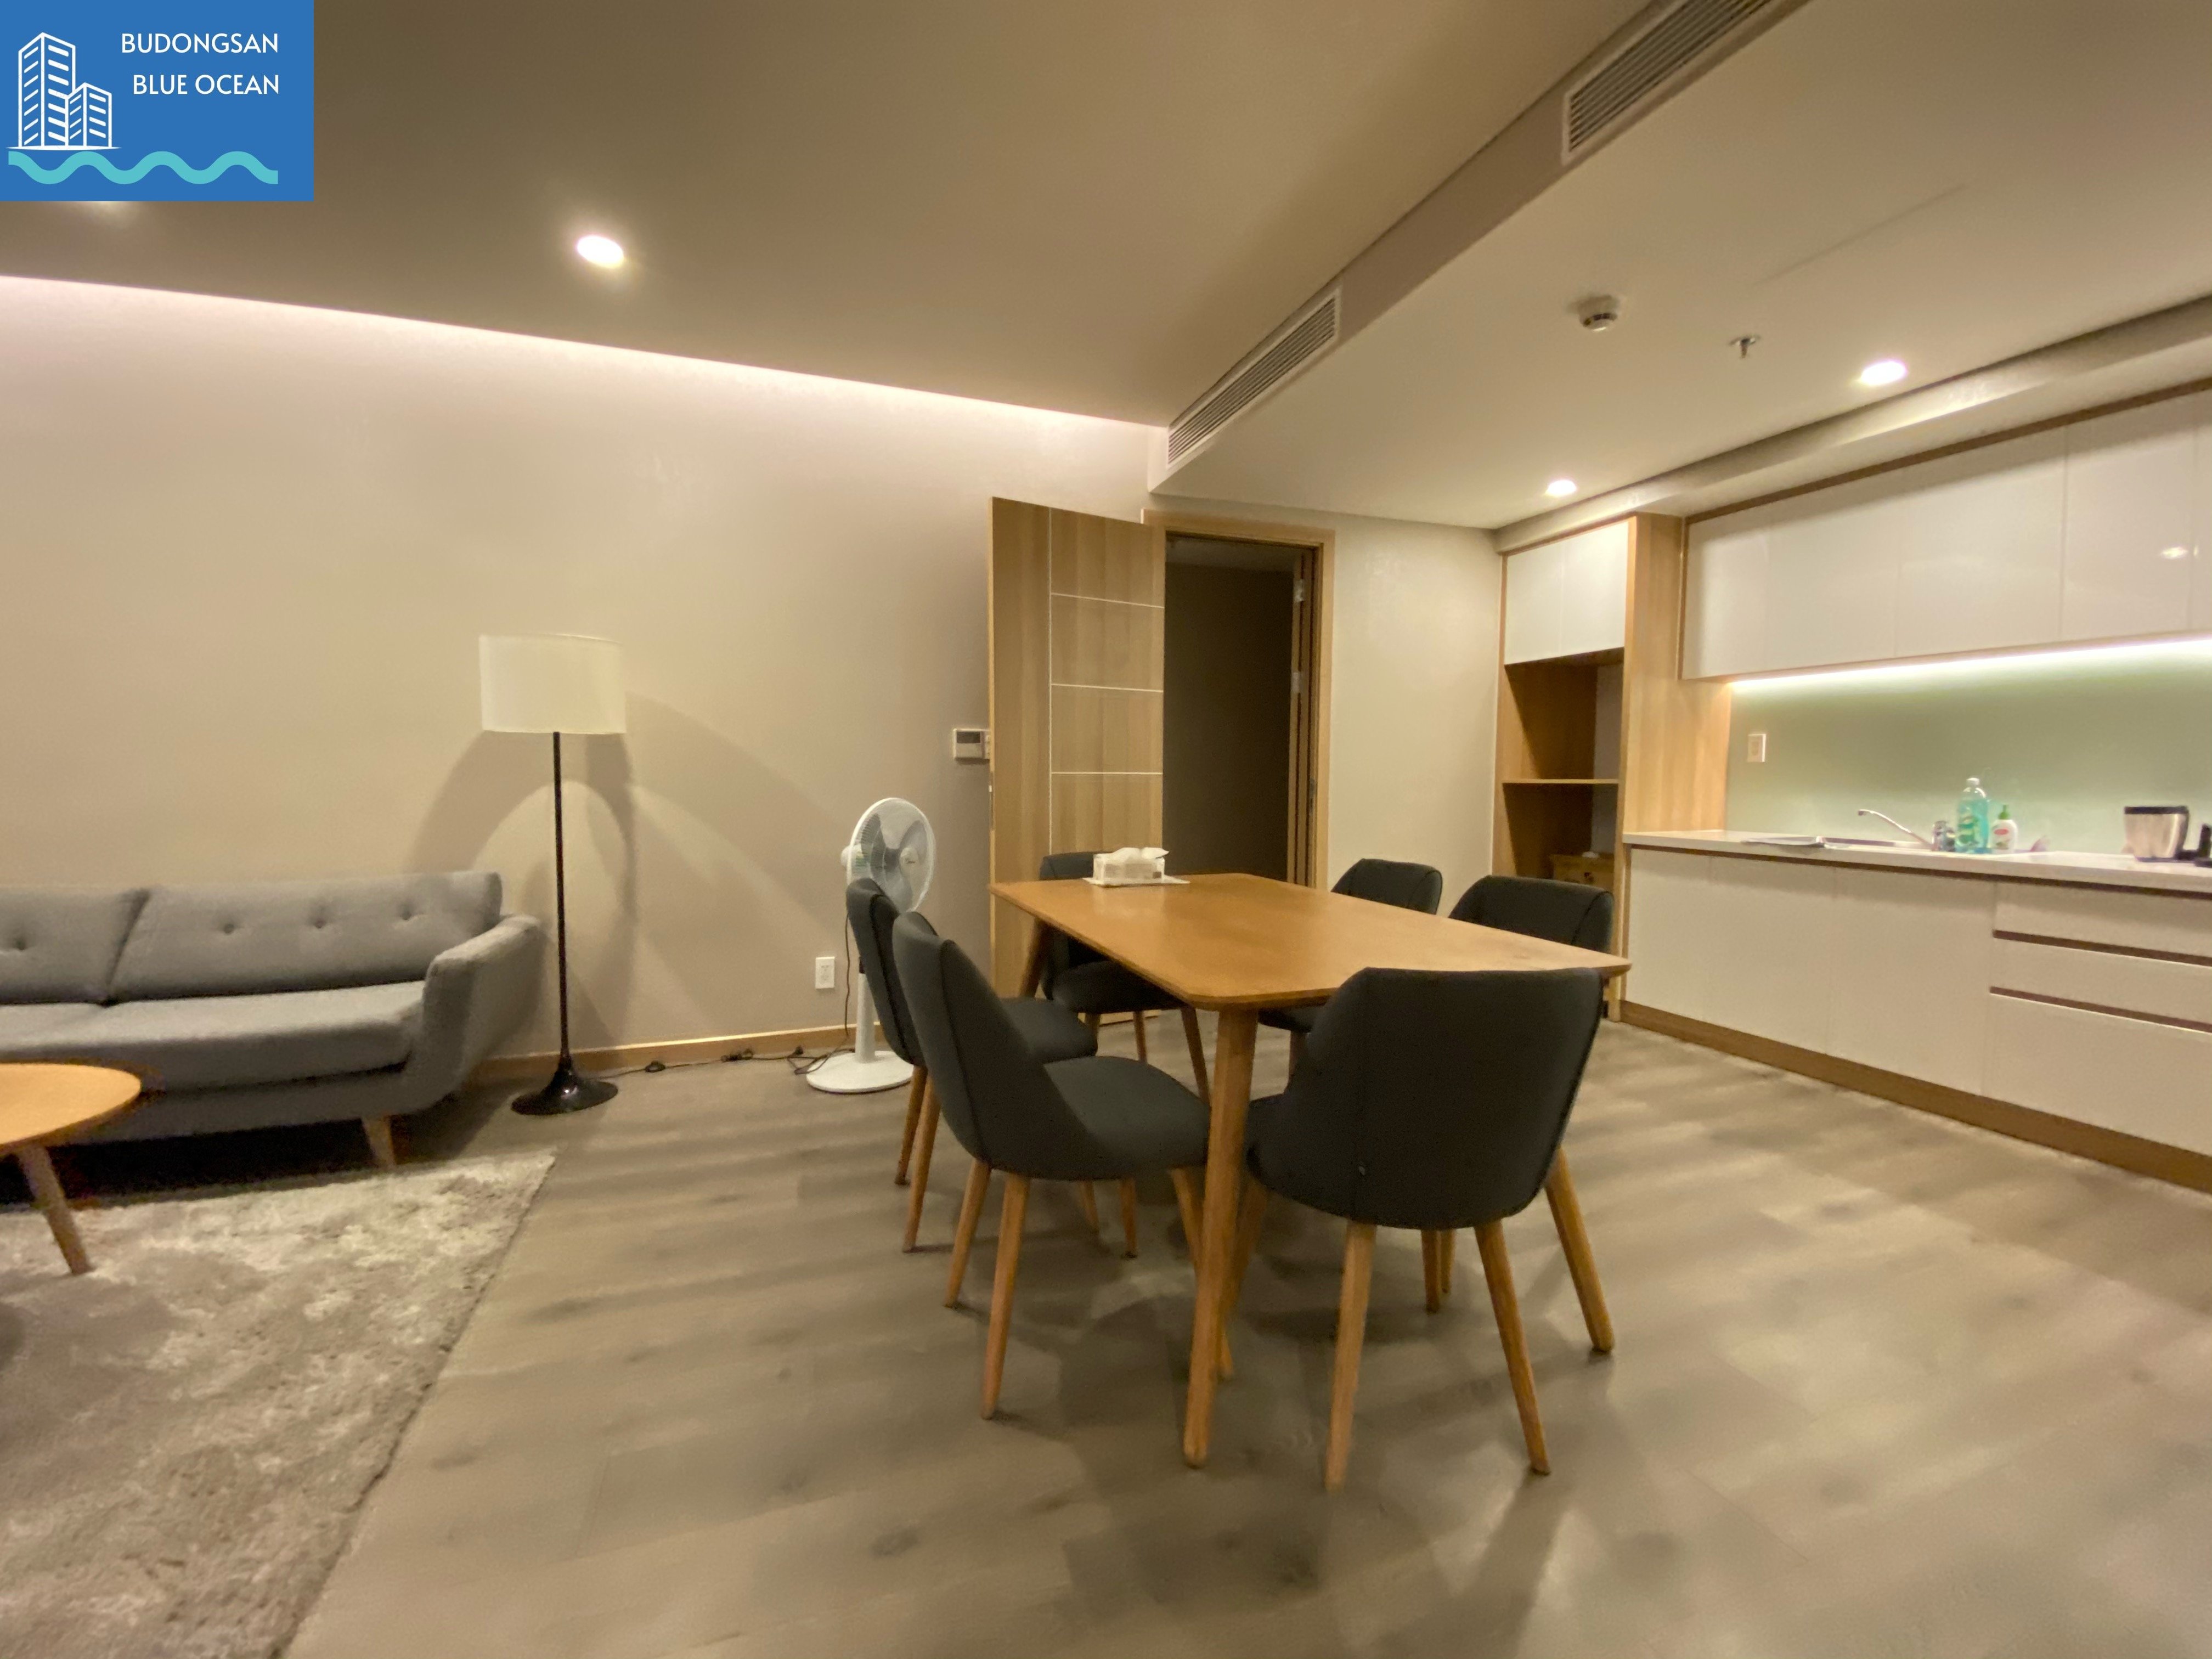 Fhome rẻ nhất thị trường căn hộ 2PN cao cấp, rộng 96m2 BÁN GIÁ 3 tỷ Budongsan Biển Xanh 7